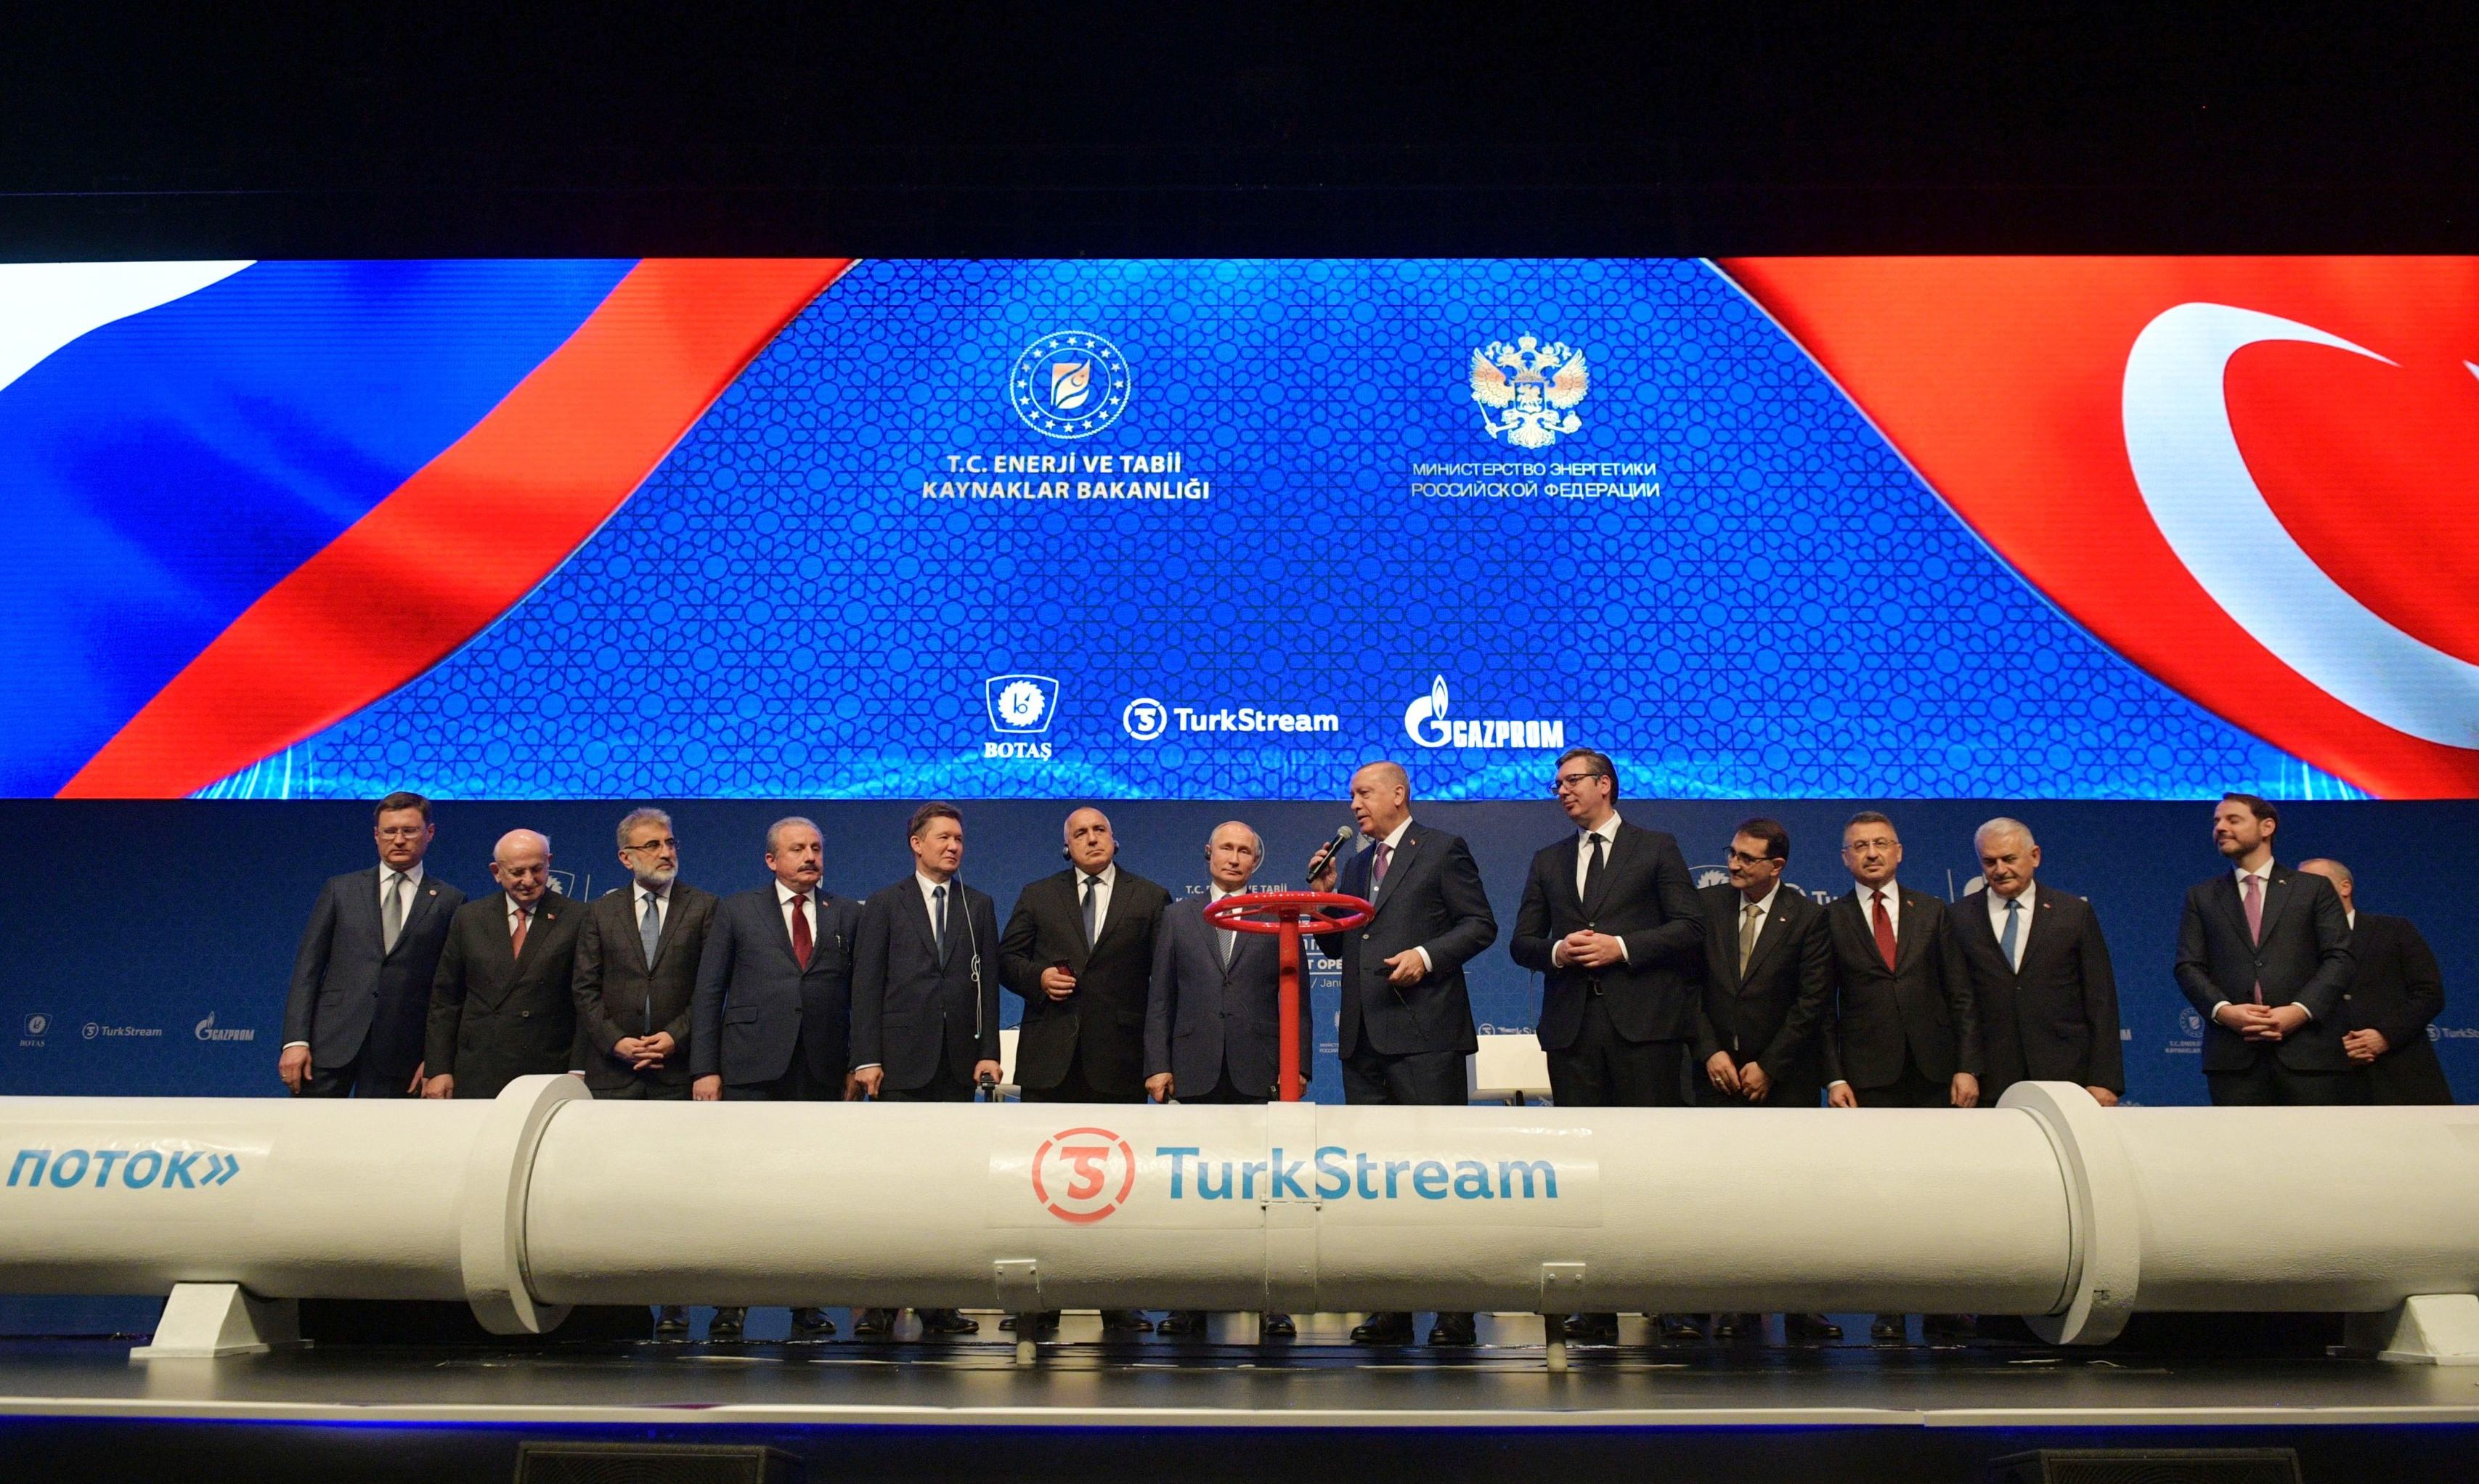 Открытие газопровода "Турецкий поток" в Стамбуле, 8 января 2020 год